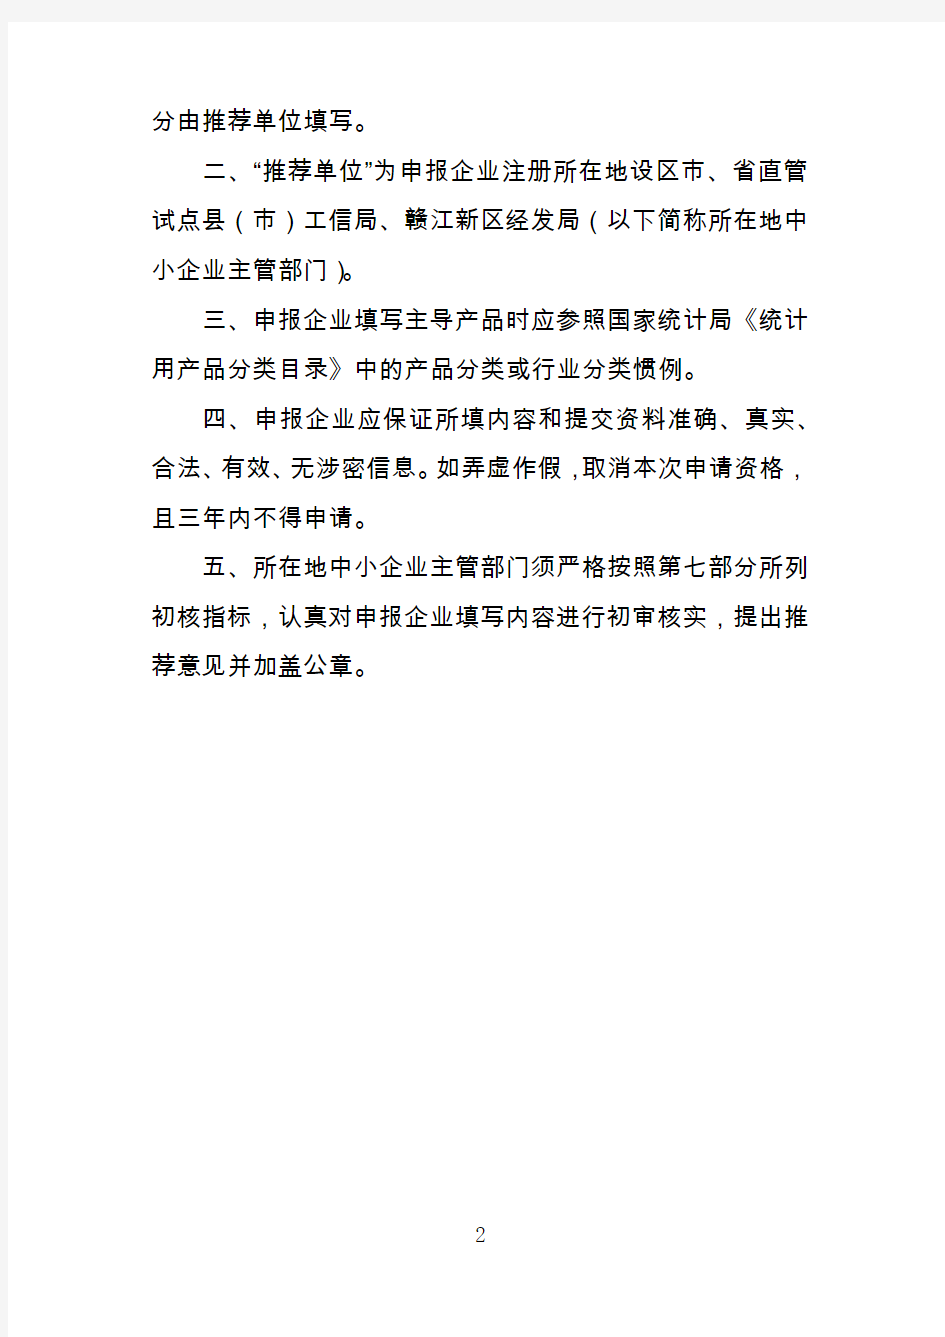 江西省专业化小巨人企业申请书、相关佐证材料列举